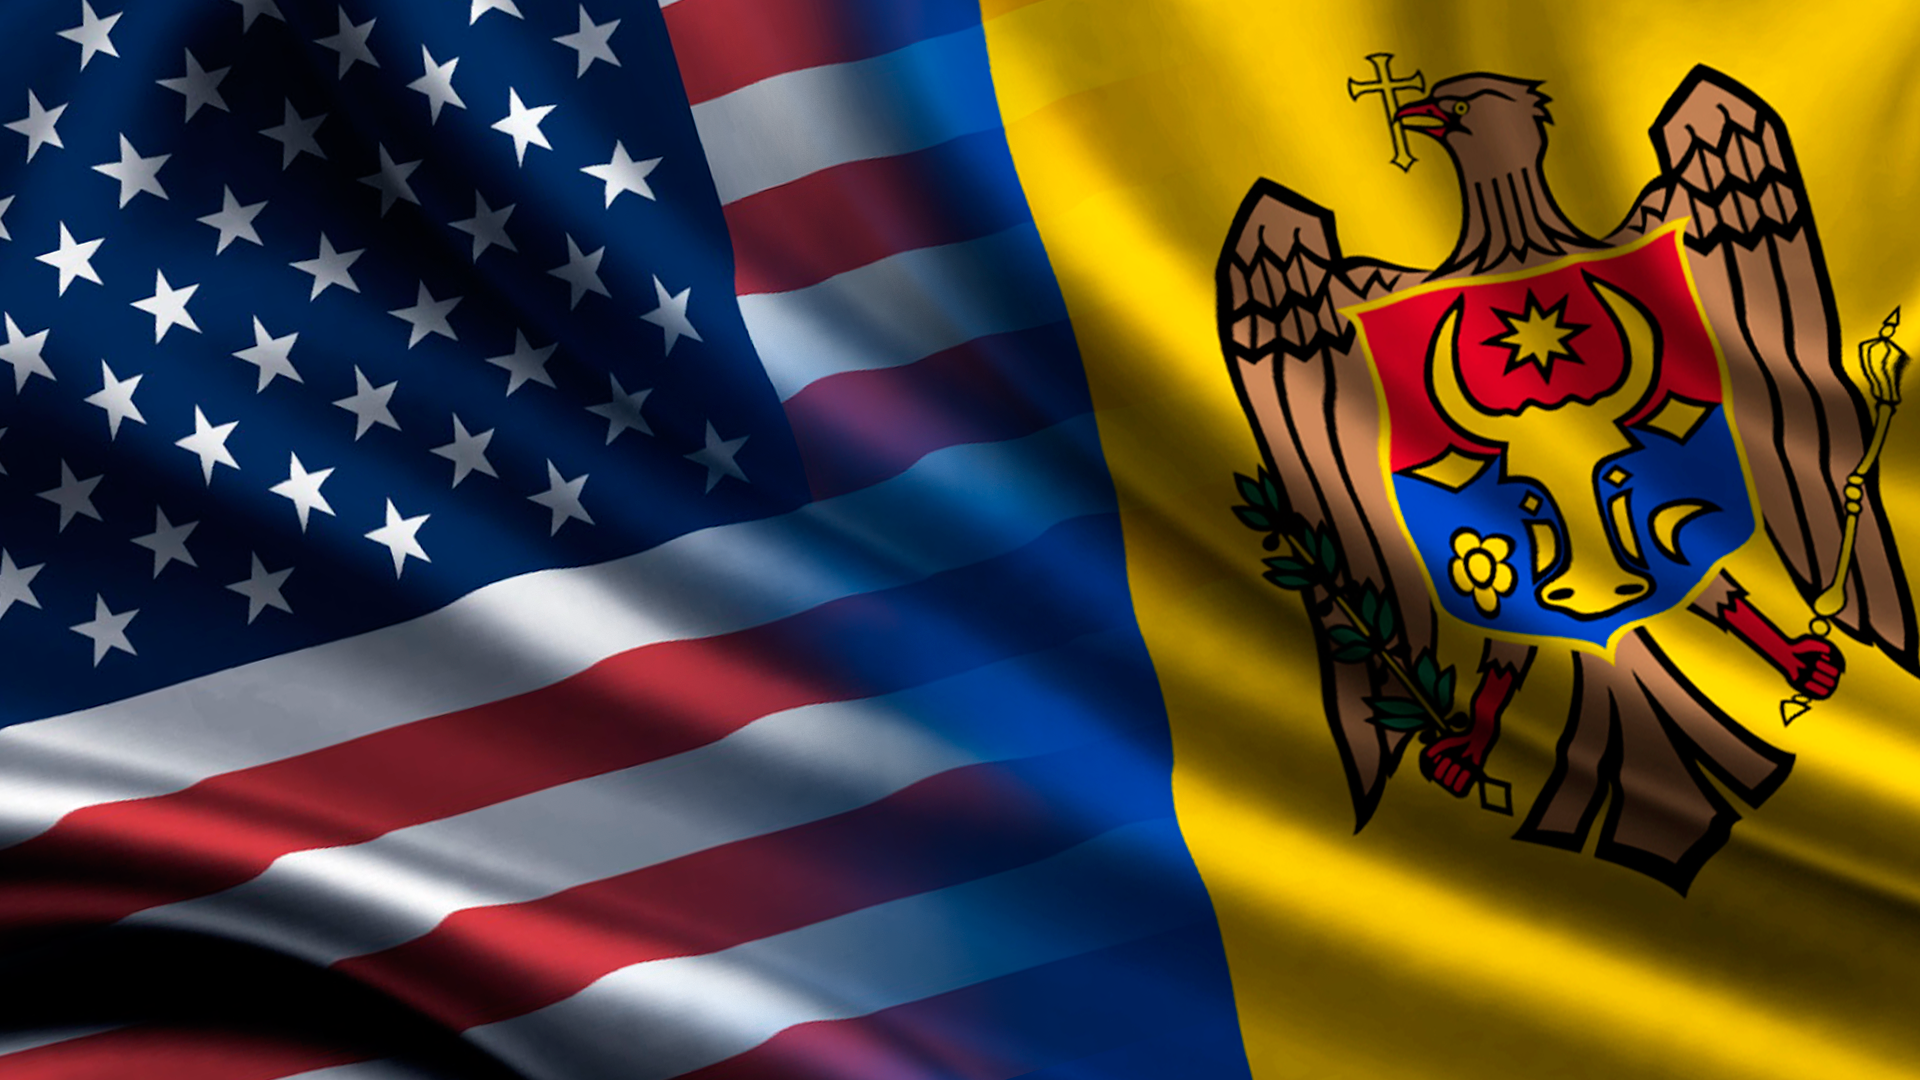 SUA vor modeniza peste 100 localitati din R.Moldova